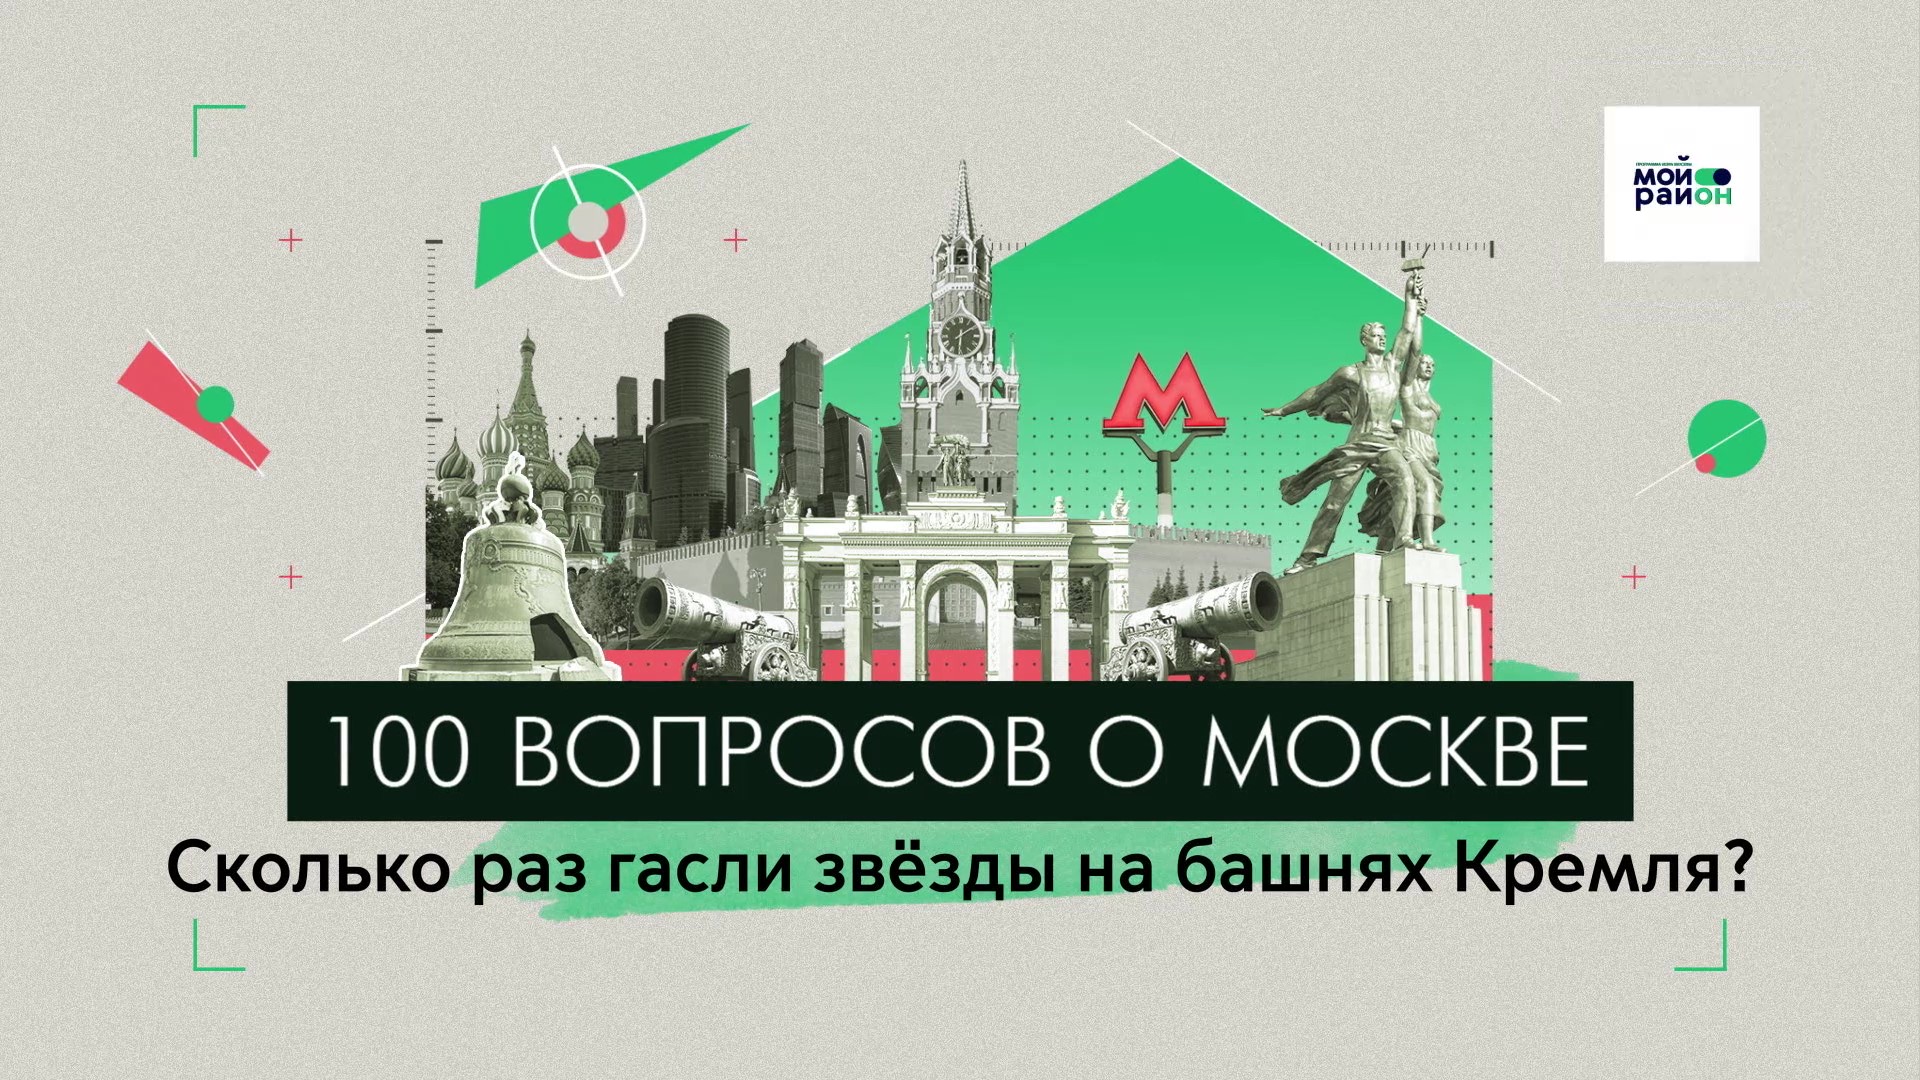 100 вопросов о Москве: Сколько раз гасли звёзды на башнях Кремля?